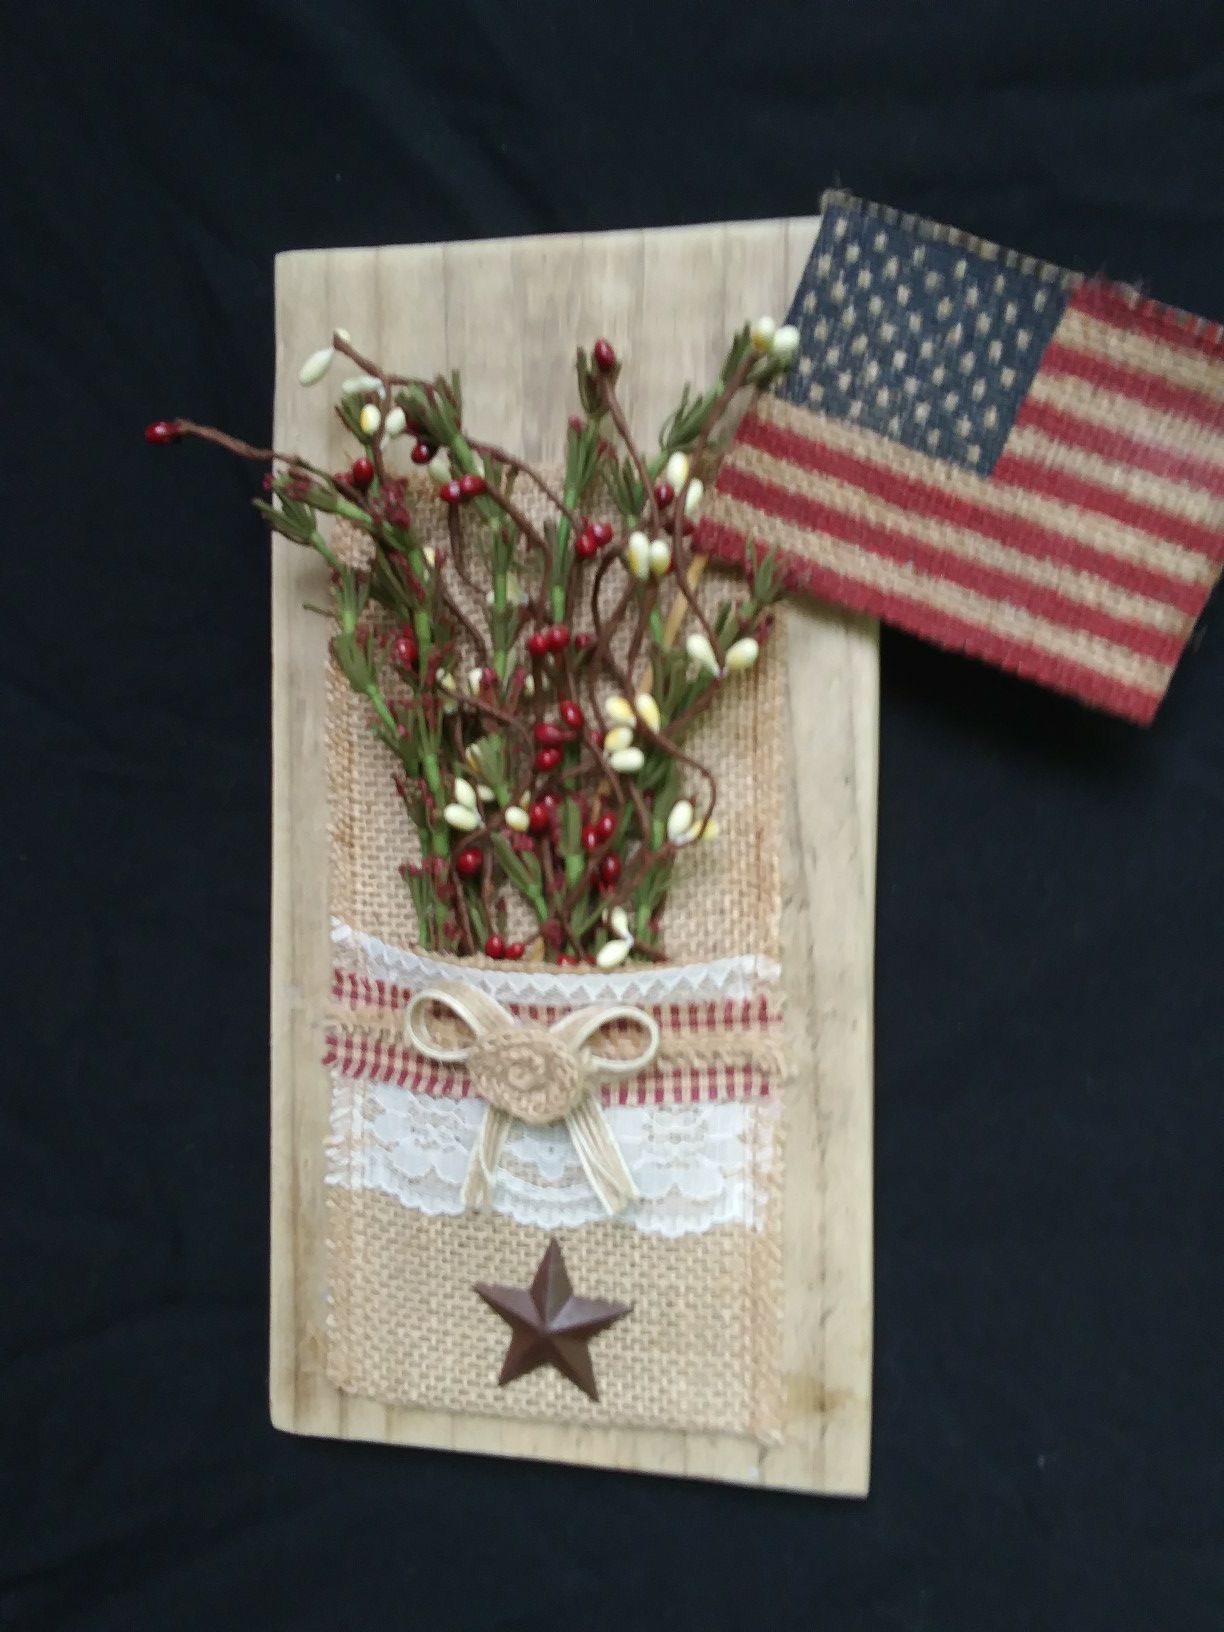 Handmade flower holders with flag